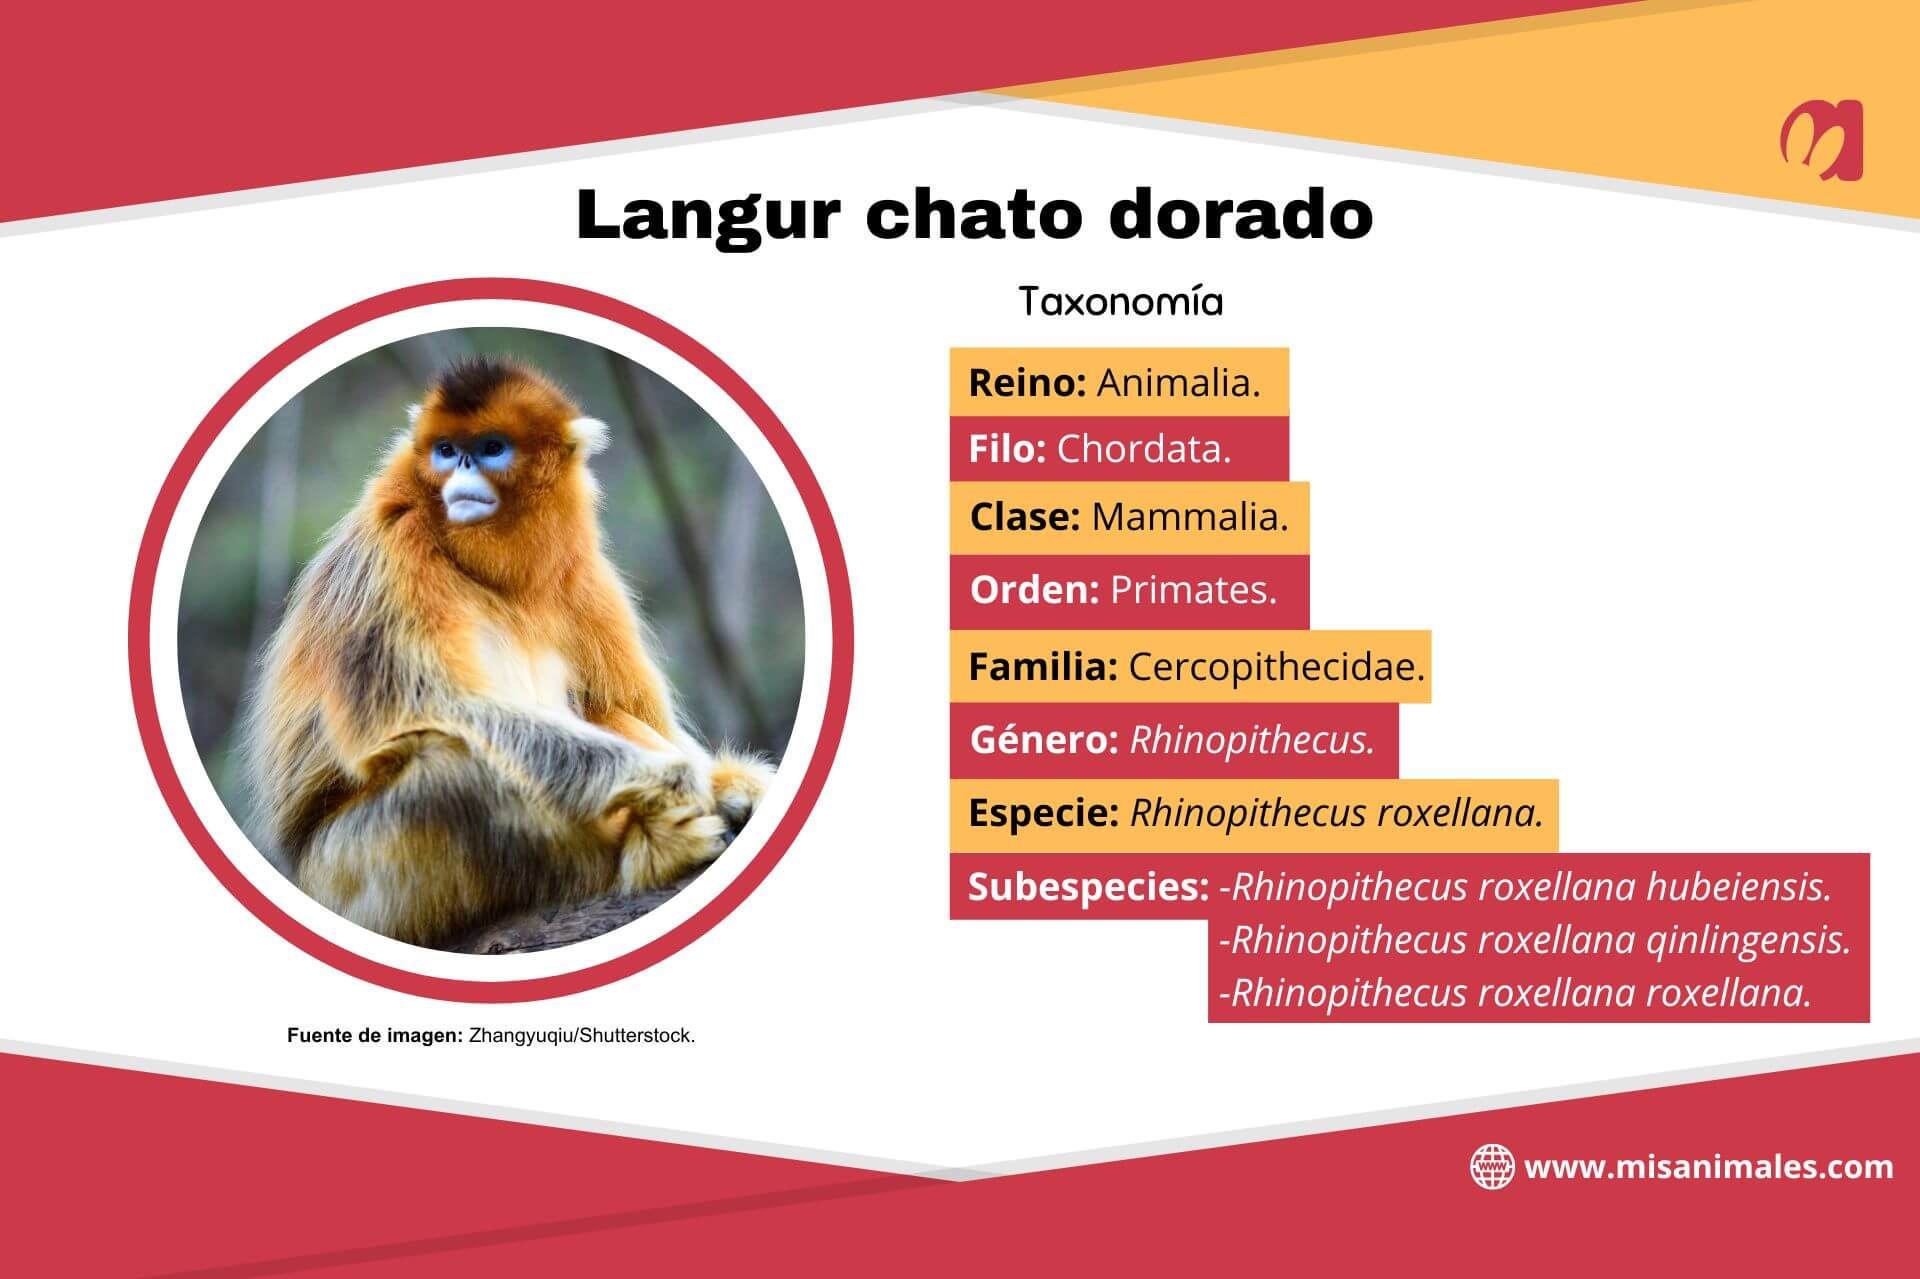 Ficha con información sobre la taxonomía del langur chato dorado. 